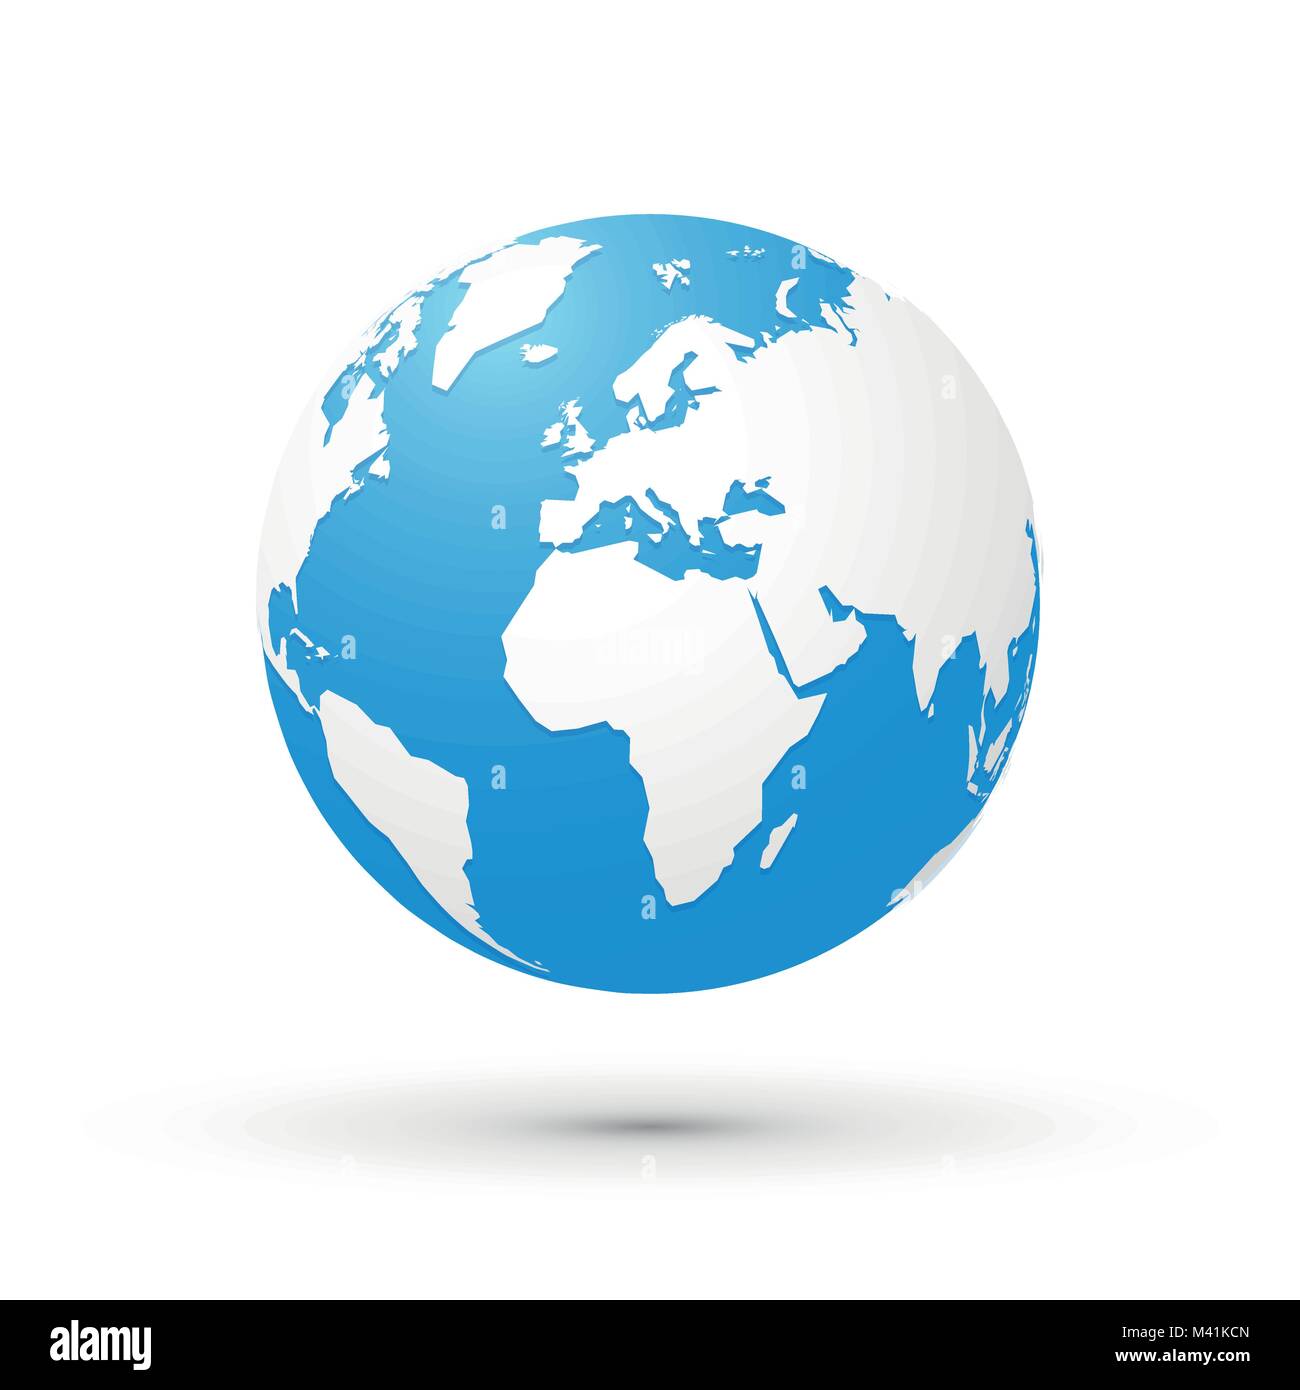 world map blue white illustration globe Stock Vector